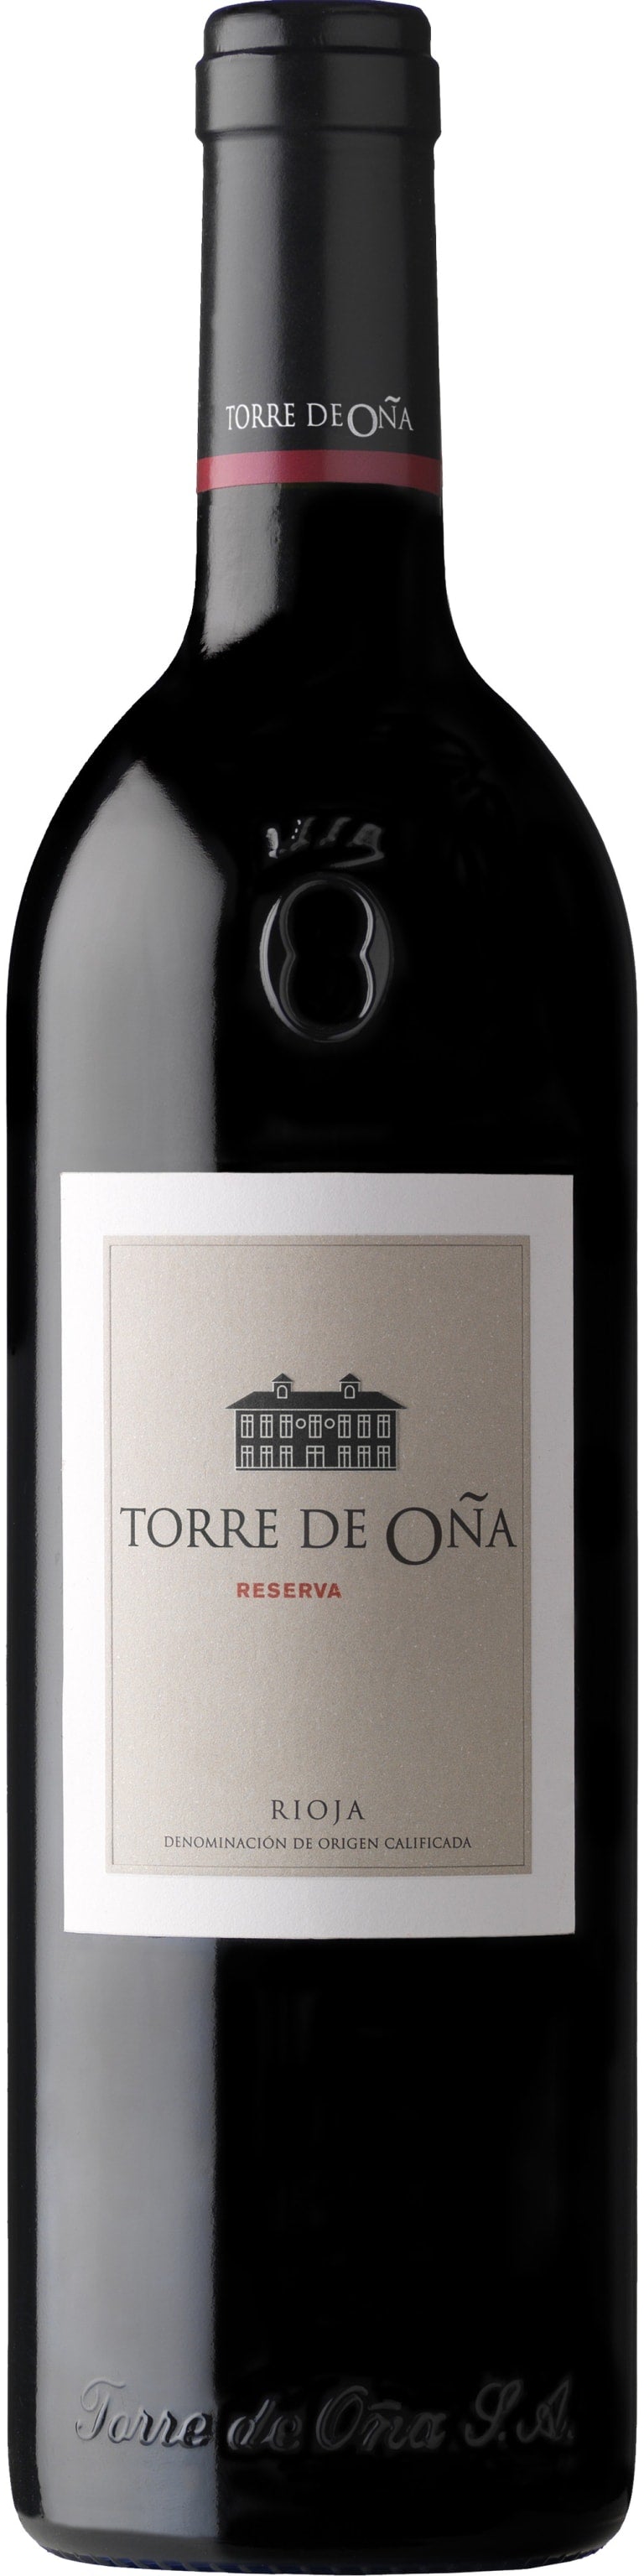 2014 Torre de Ona by La Rioja Alta Rioja Reserva Tempranillo, Rioja